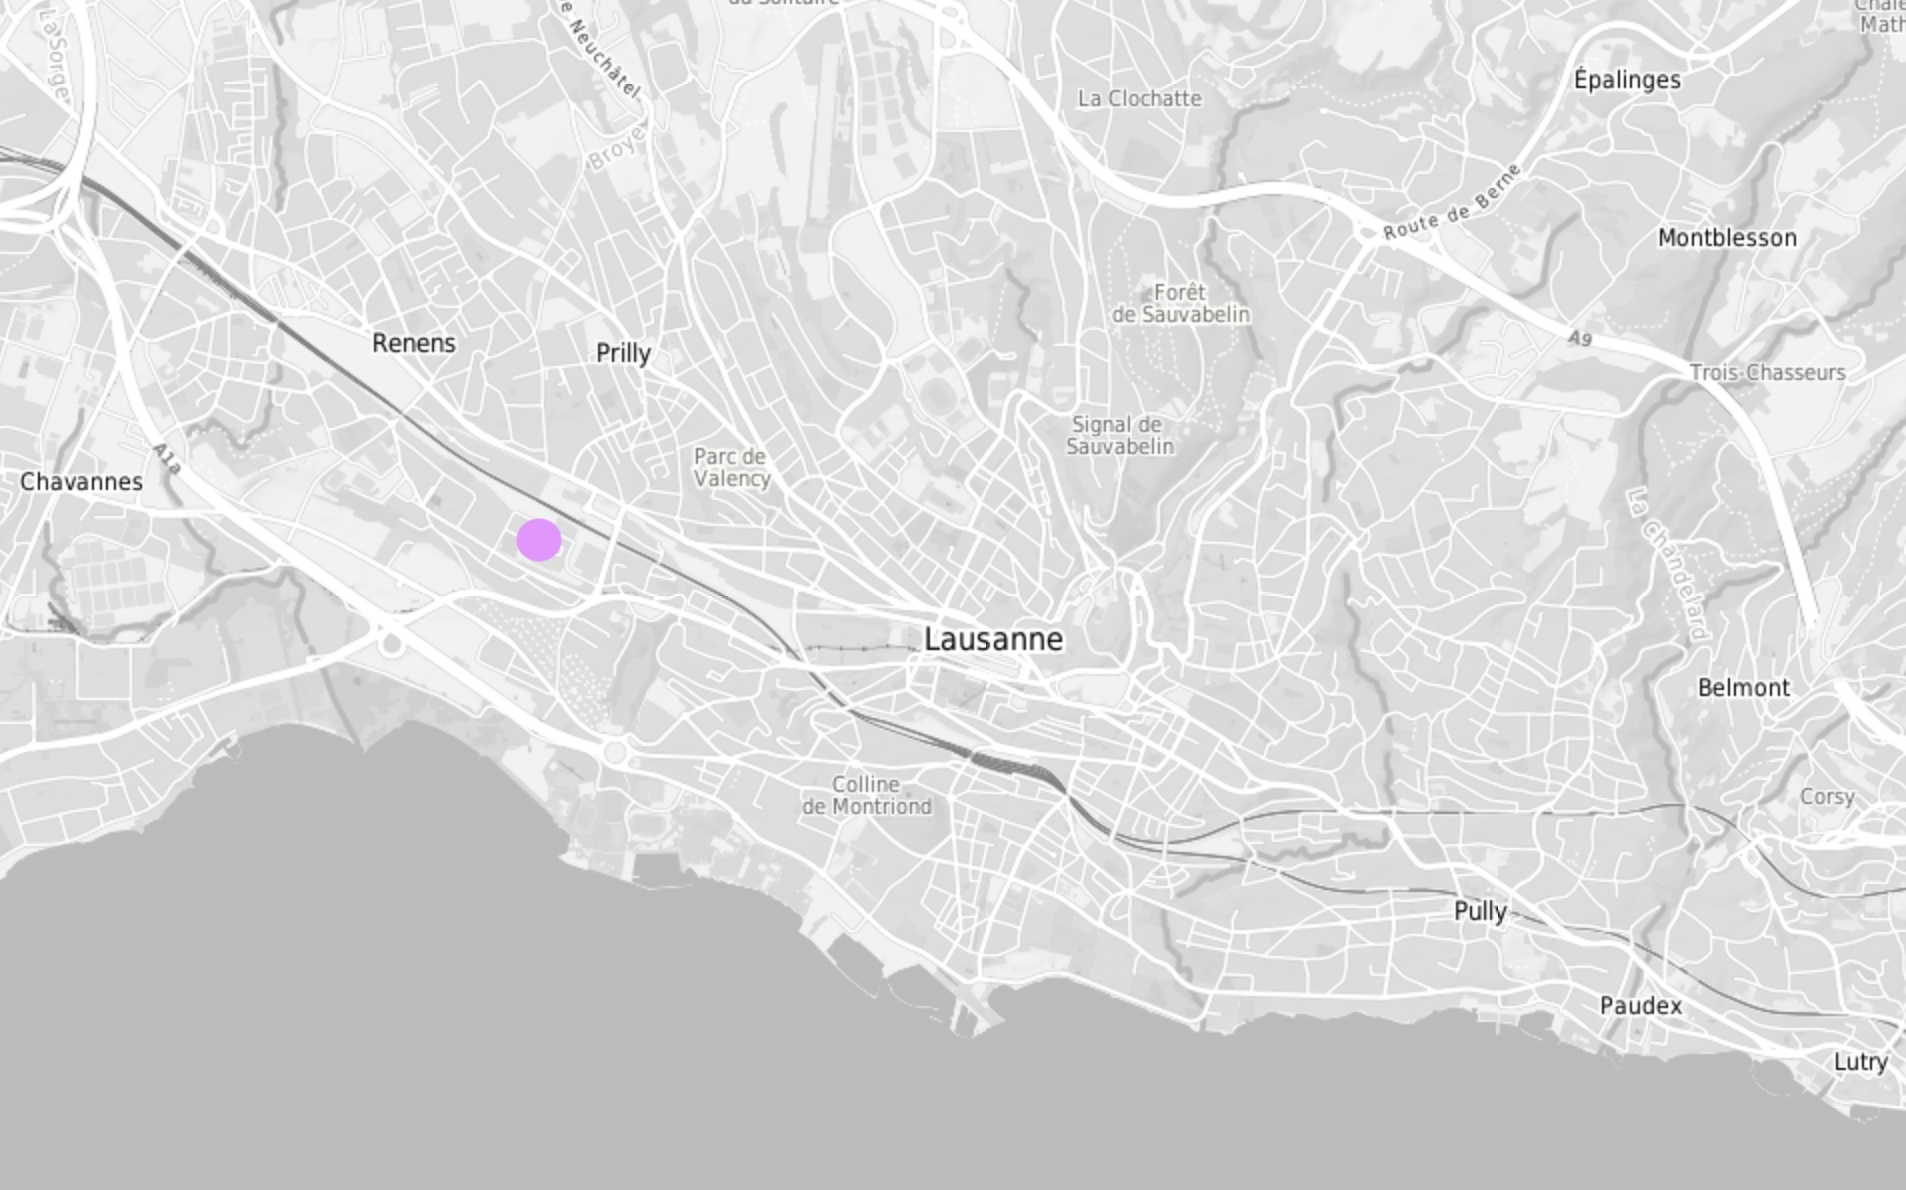 Plan en tons de gris de la région de Lausanne. La friche est indiquée par un point de couleur lilas.